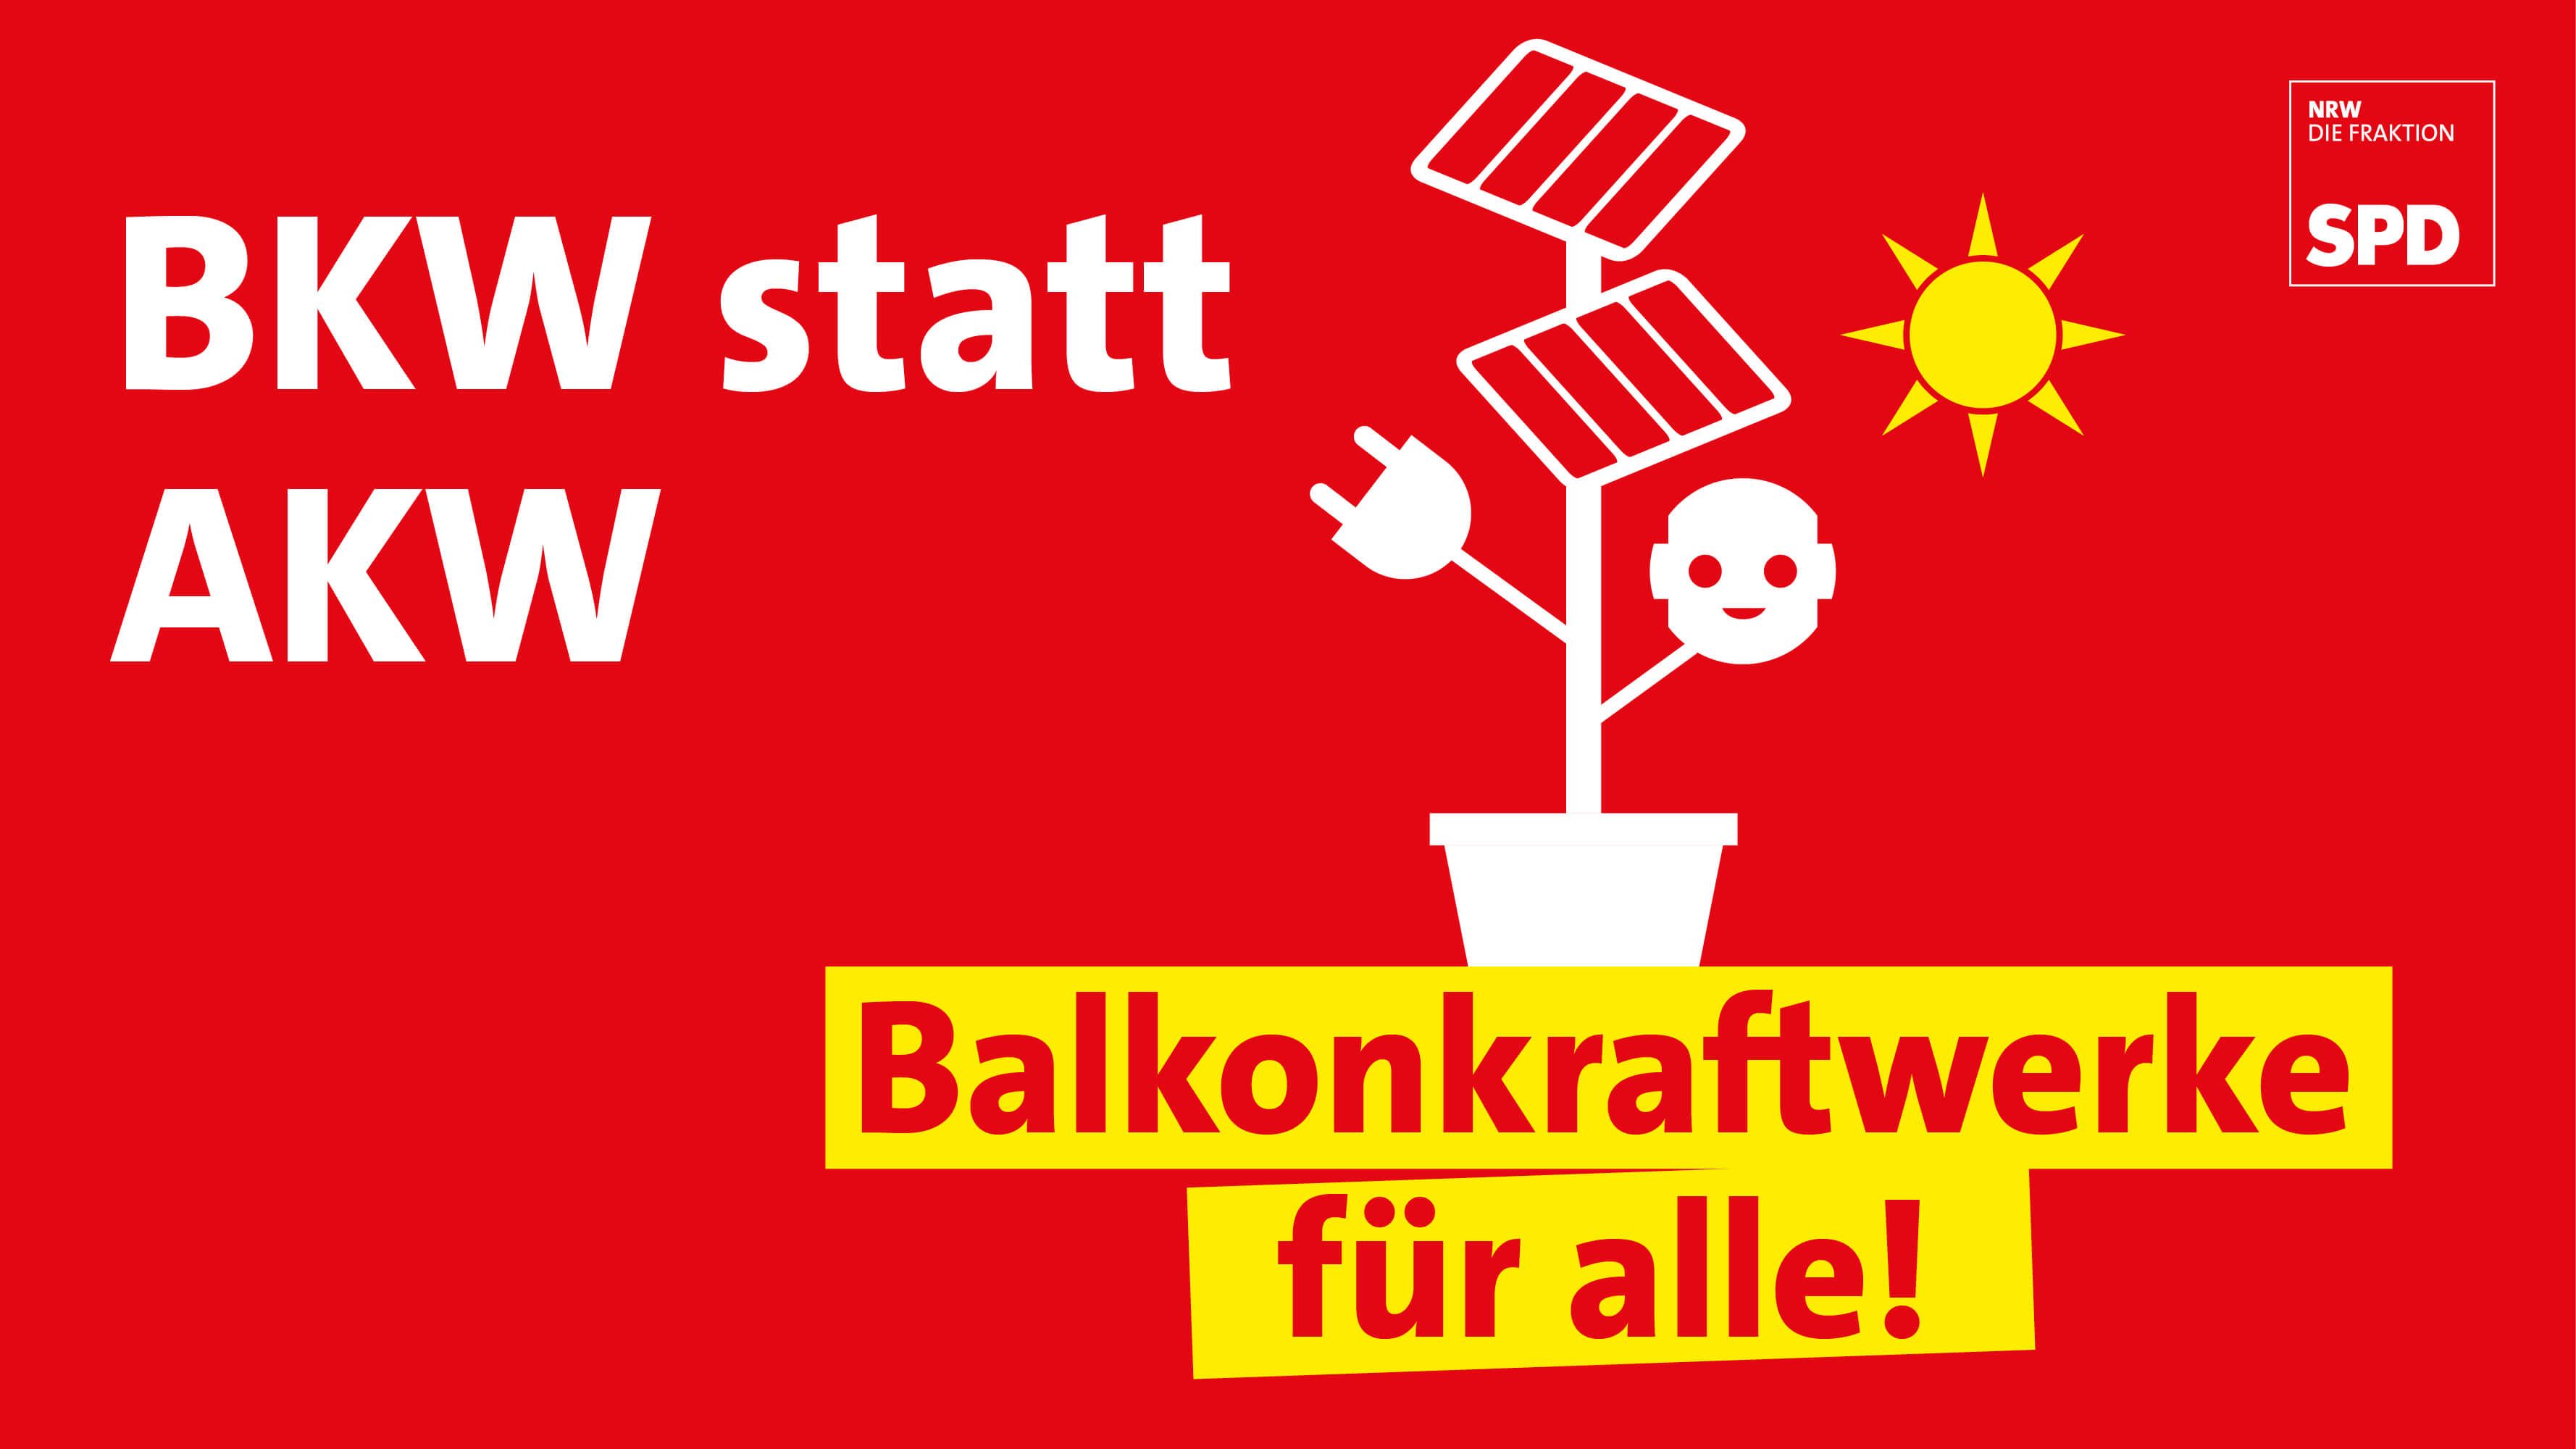 BKW statt AKW – wie die SPD-Fraktion Balkonkraftwerke in NRW stärken will